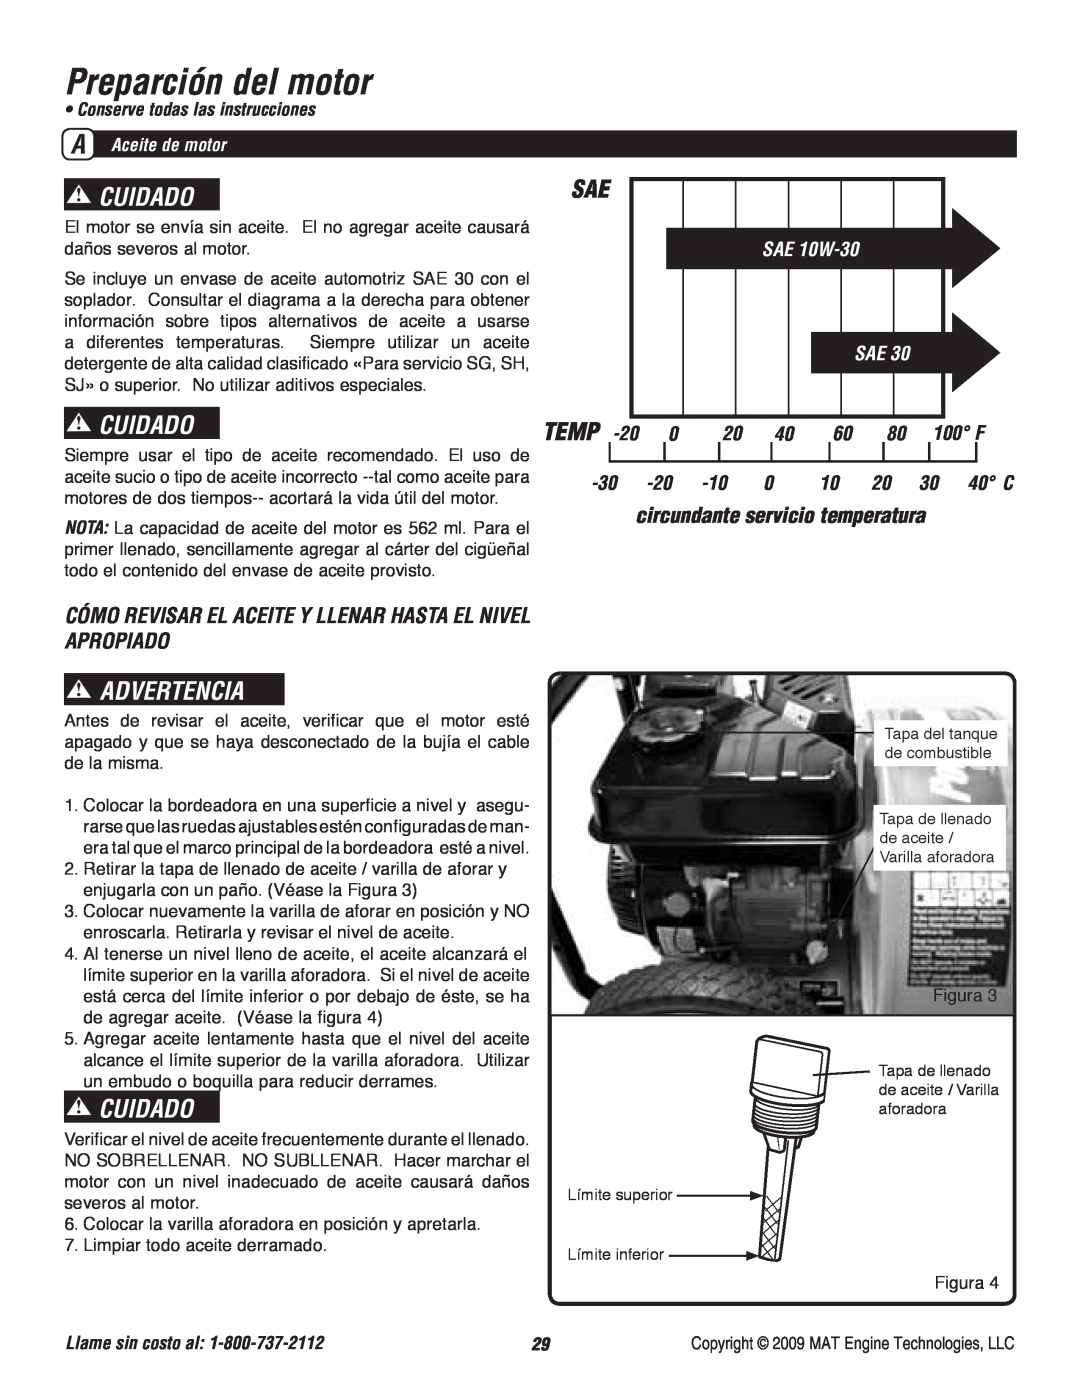 Powermate P-WB-163150-[E] Preparción del motor, circundante servicio temperatura, Cuidado, Advertencia, Temp, SAE 10W-30 